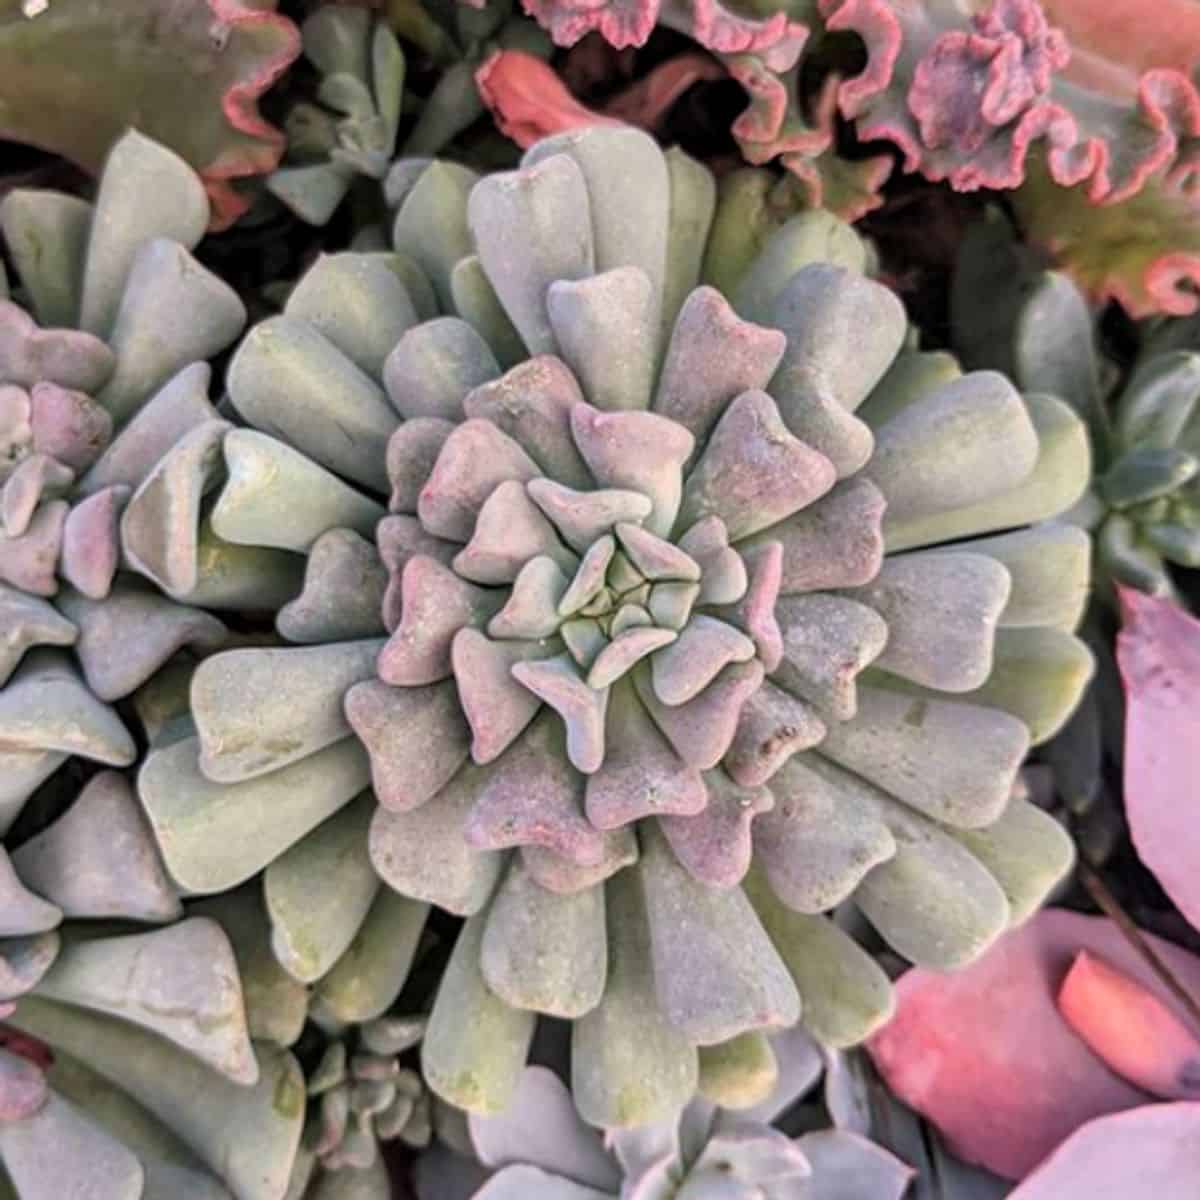 Echeveria ‘Cubic Frost’ close-up.